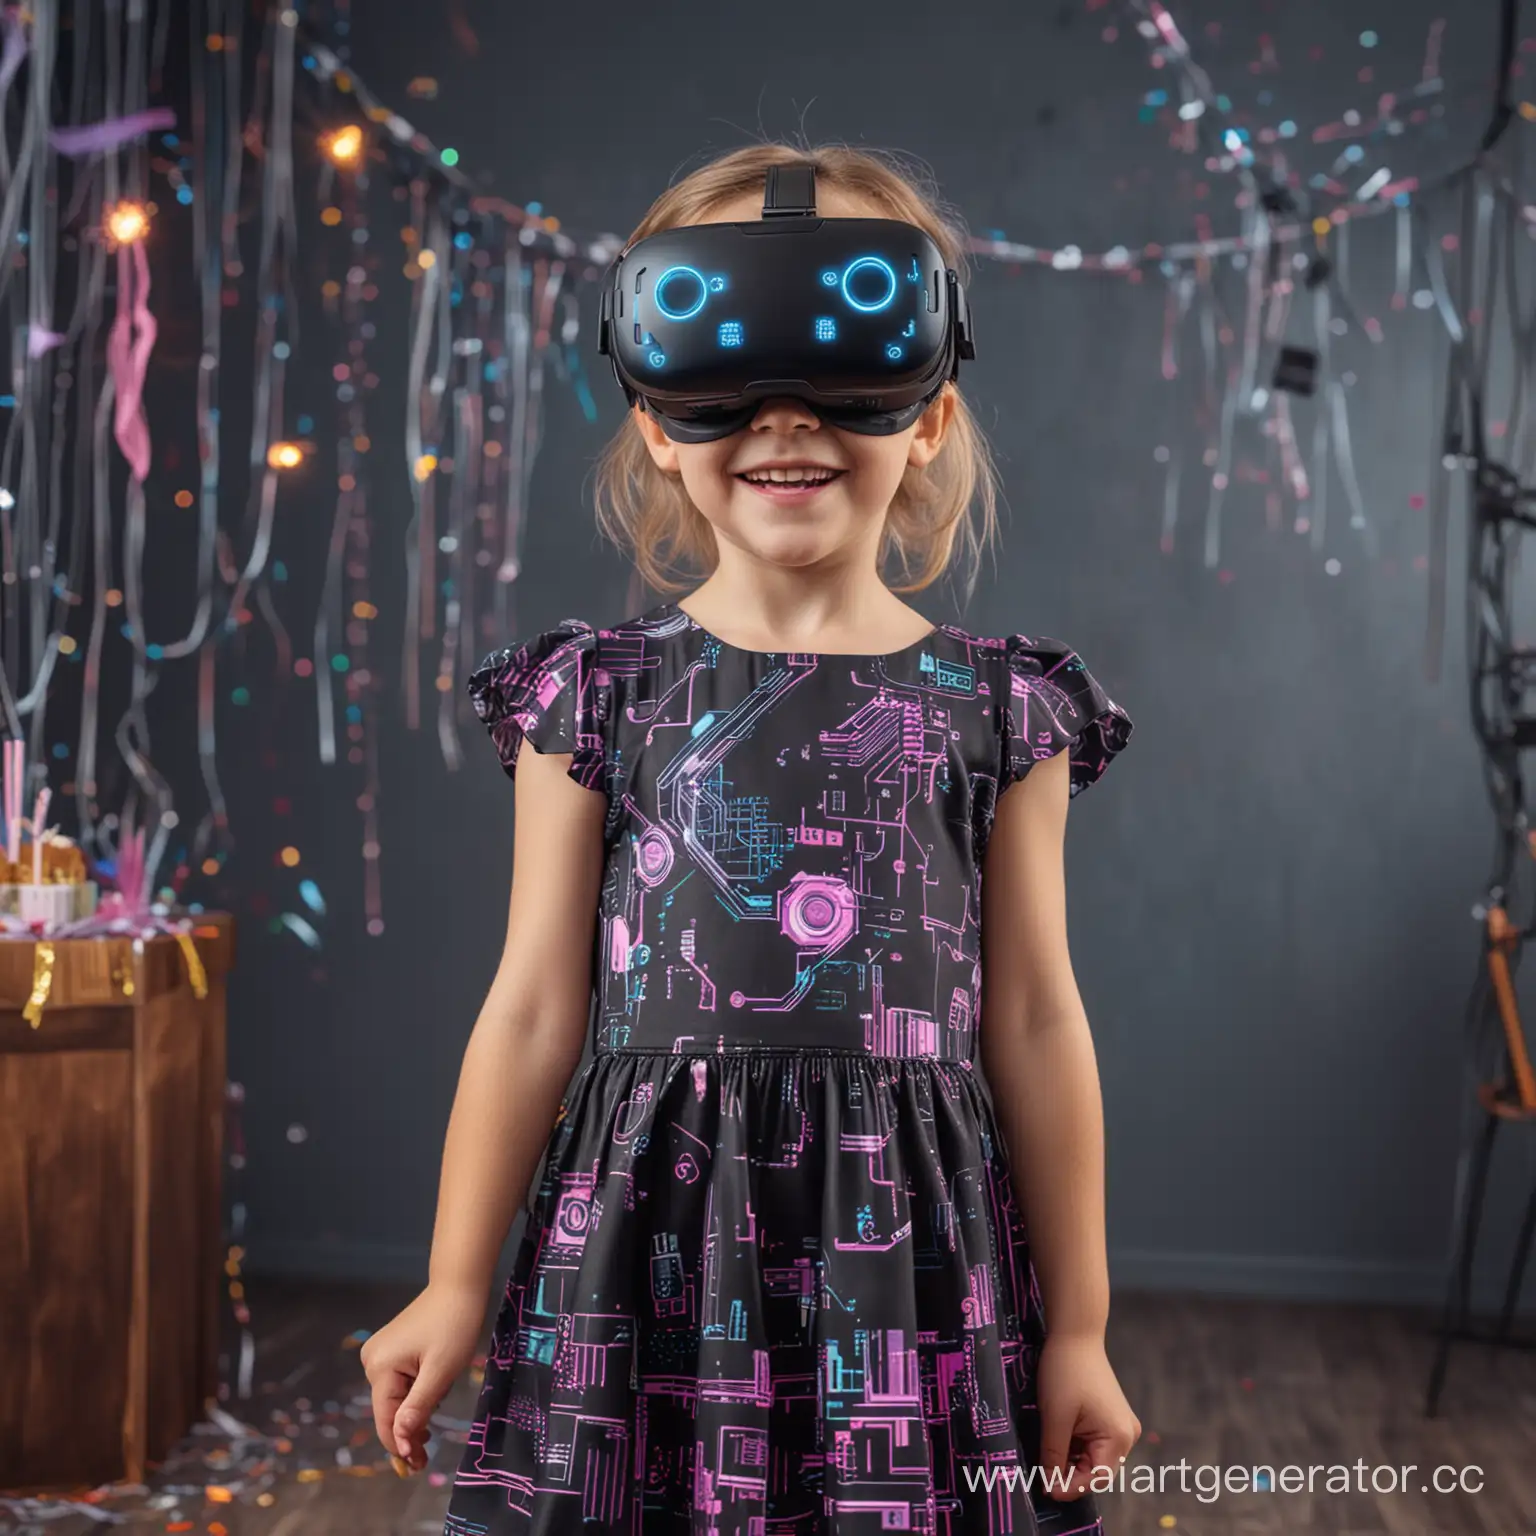 радостная маленькая девочка в vr очках,в платье, на день рождении, в стиле киберпанк